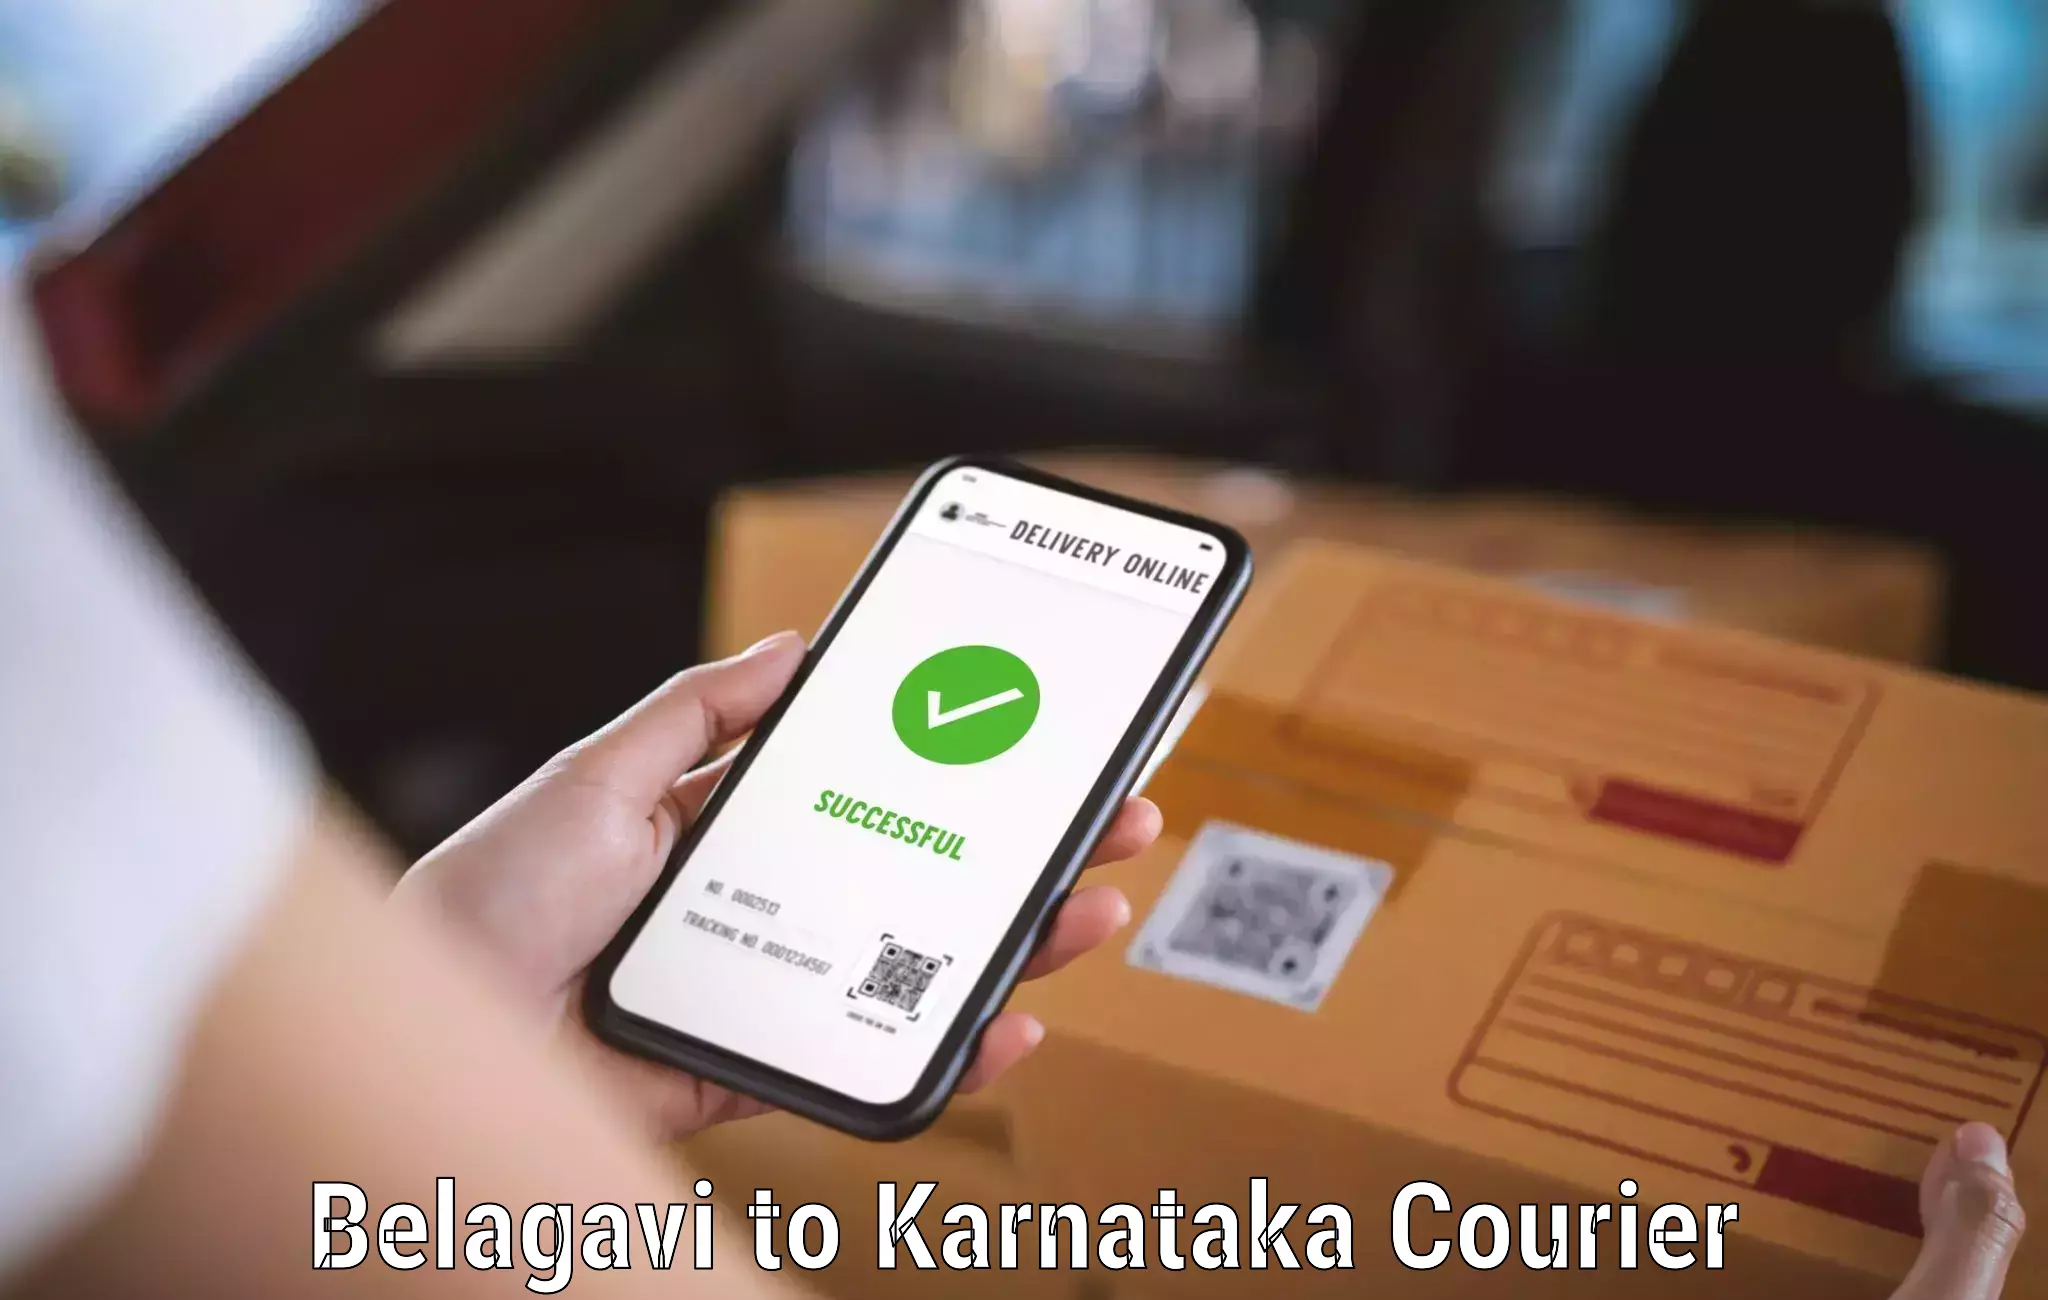 Customized shipping options Belagavi to Bangalore